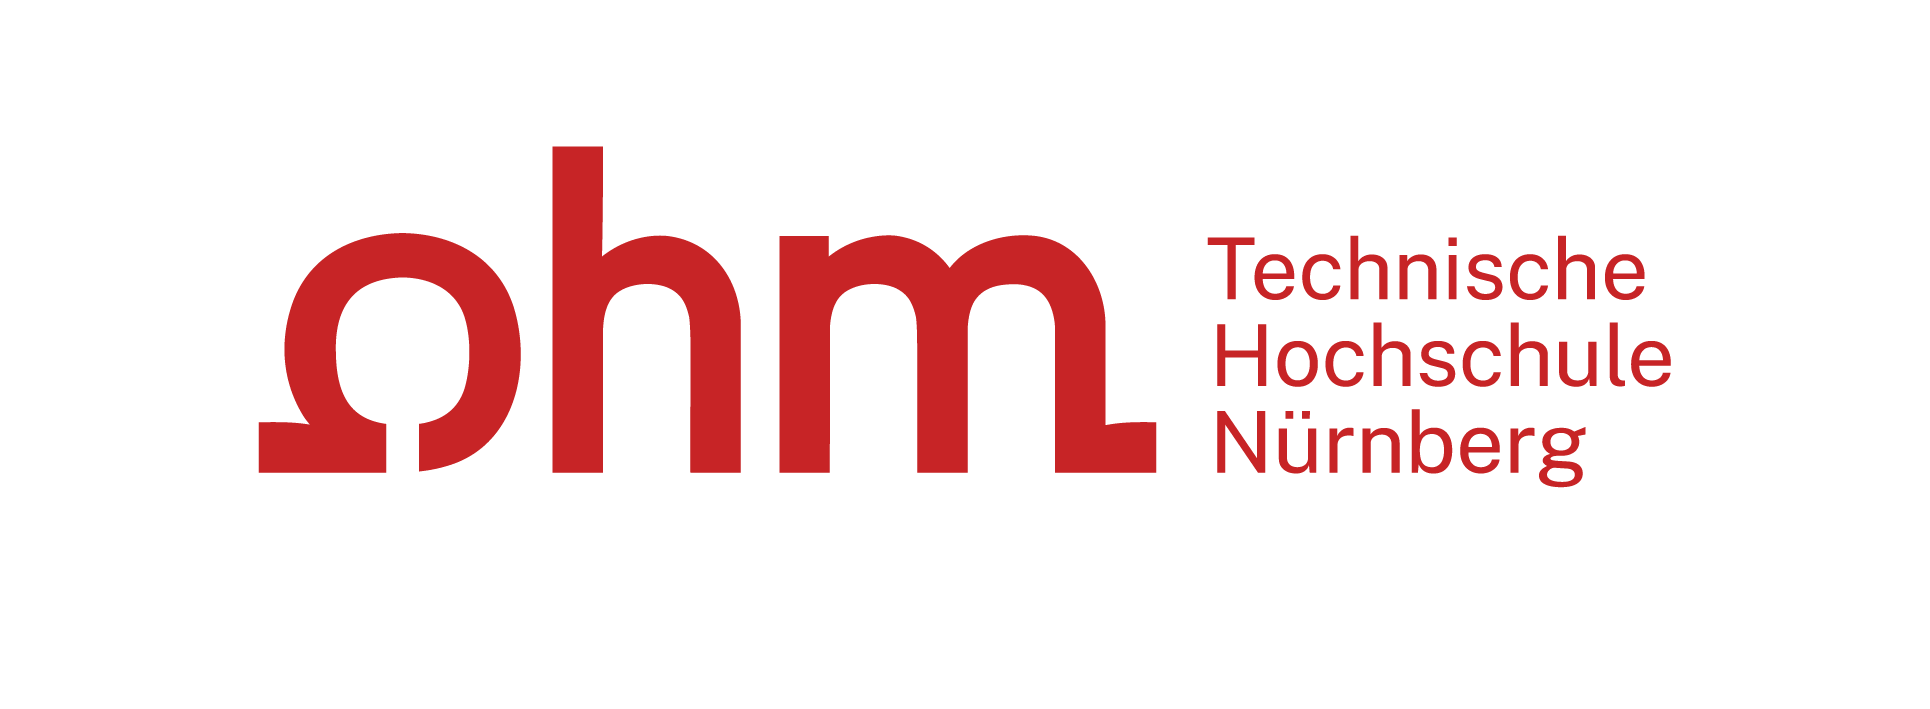 Logo Technische Hochschule Nürnberg Georg Simon Ohm